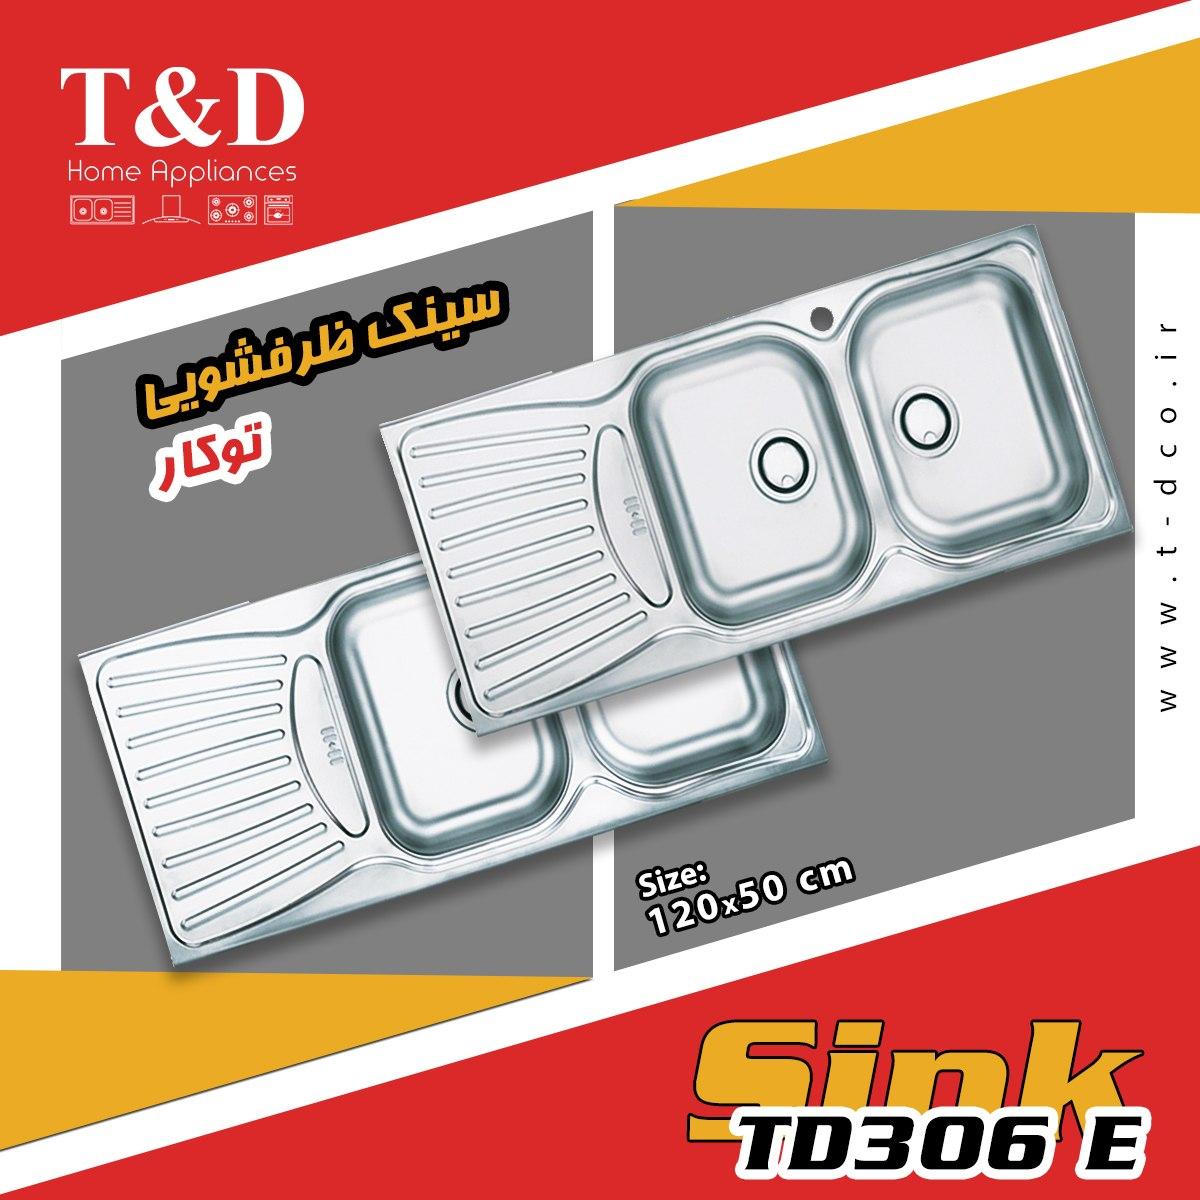 سینک ظرفشویی تی اند دی TD306Eمدل